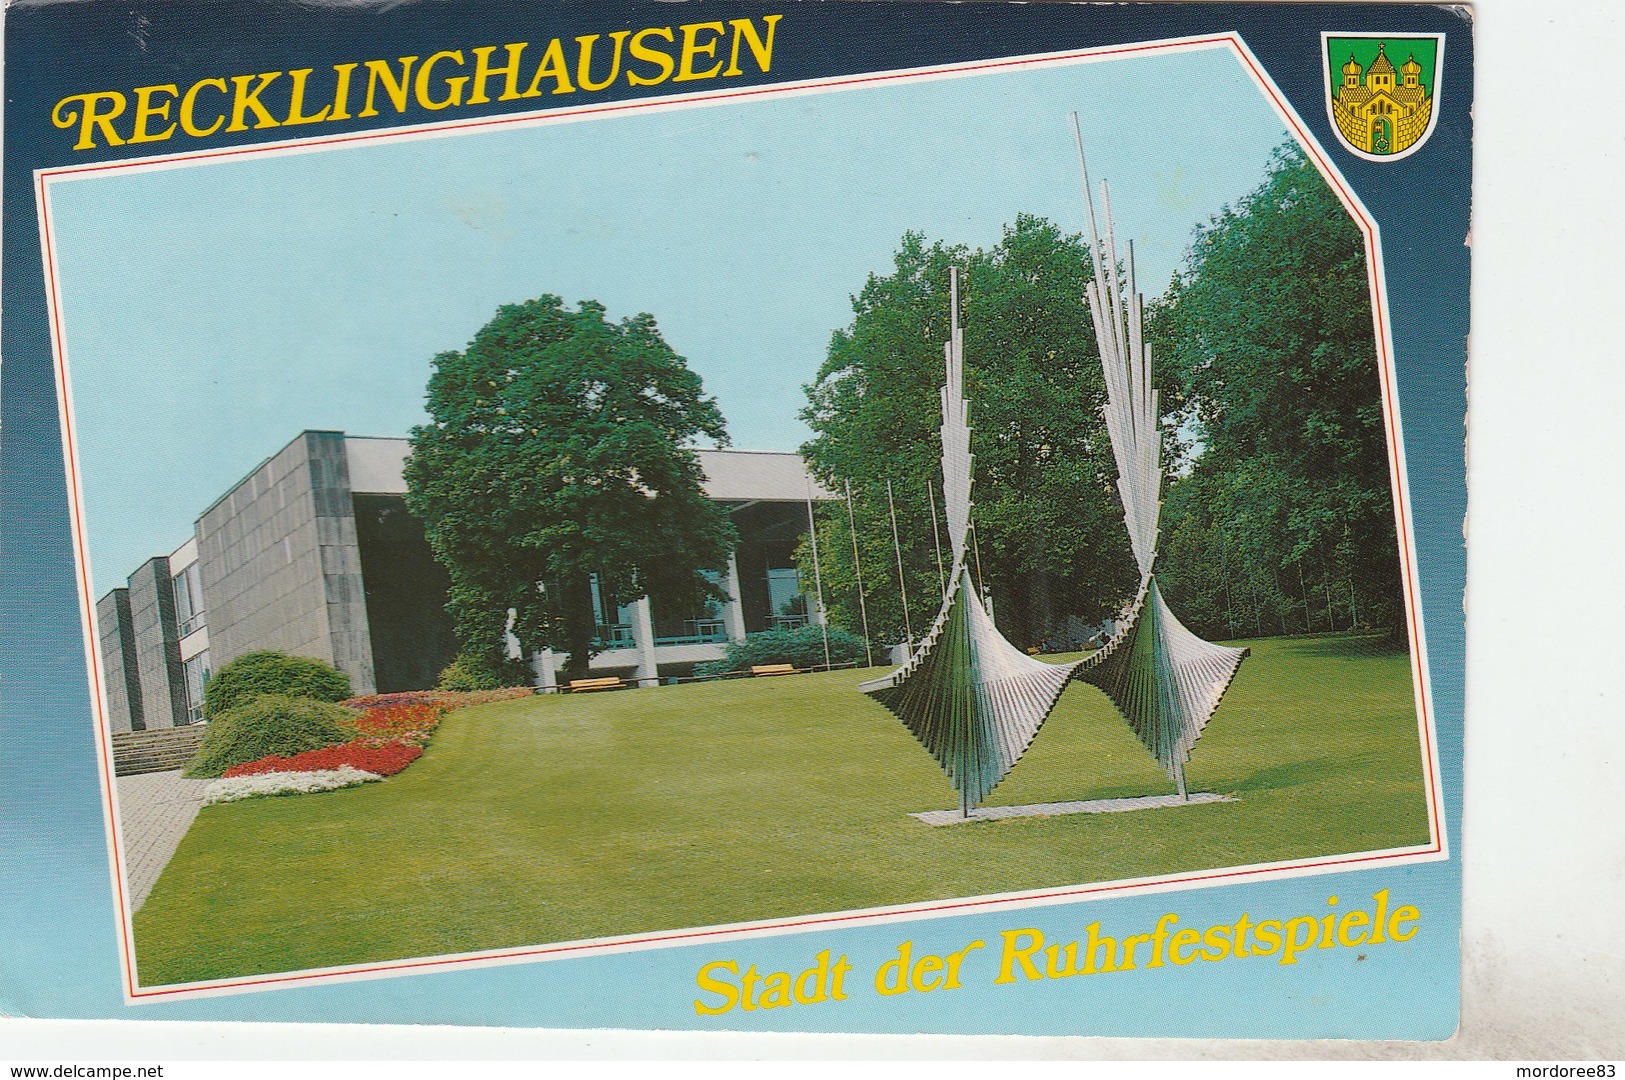 RECKLINGHAUSEN - STADT DER RUHRFESTSPIELE - Recklinghausen